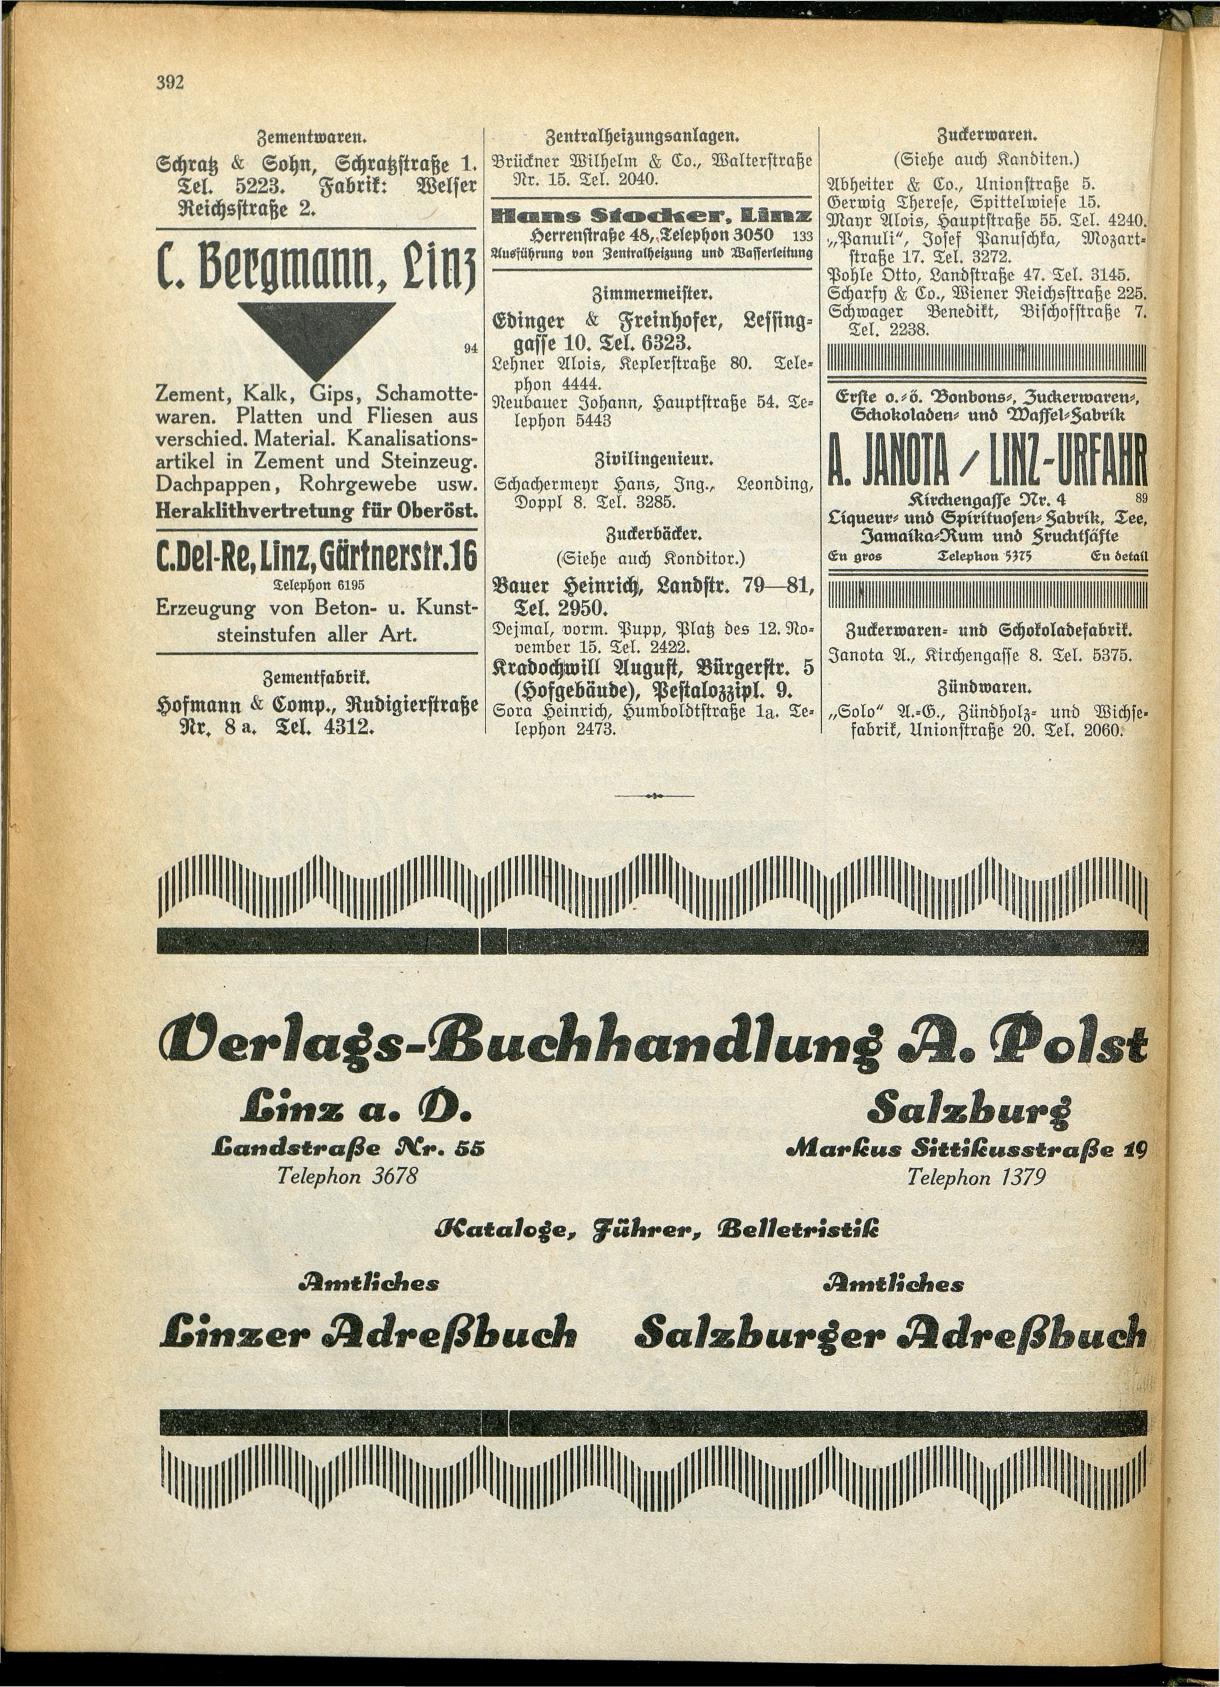 Amtliches Linzer Adreßbuch 1928 - Seite 394